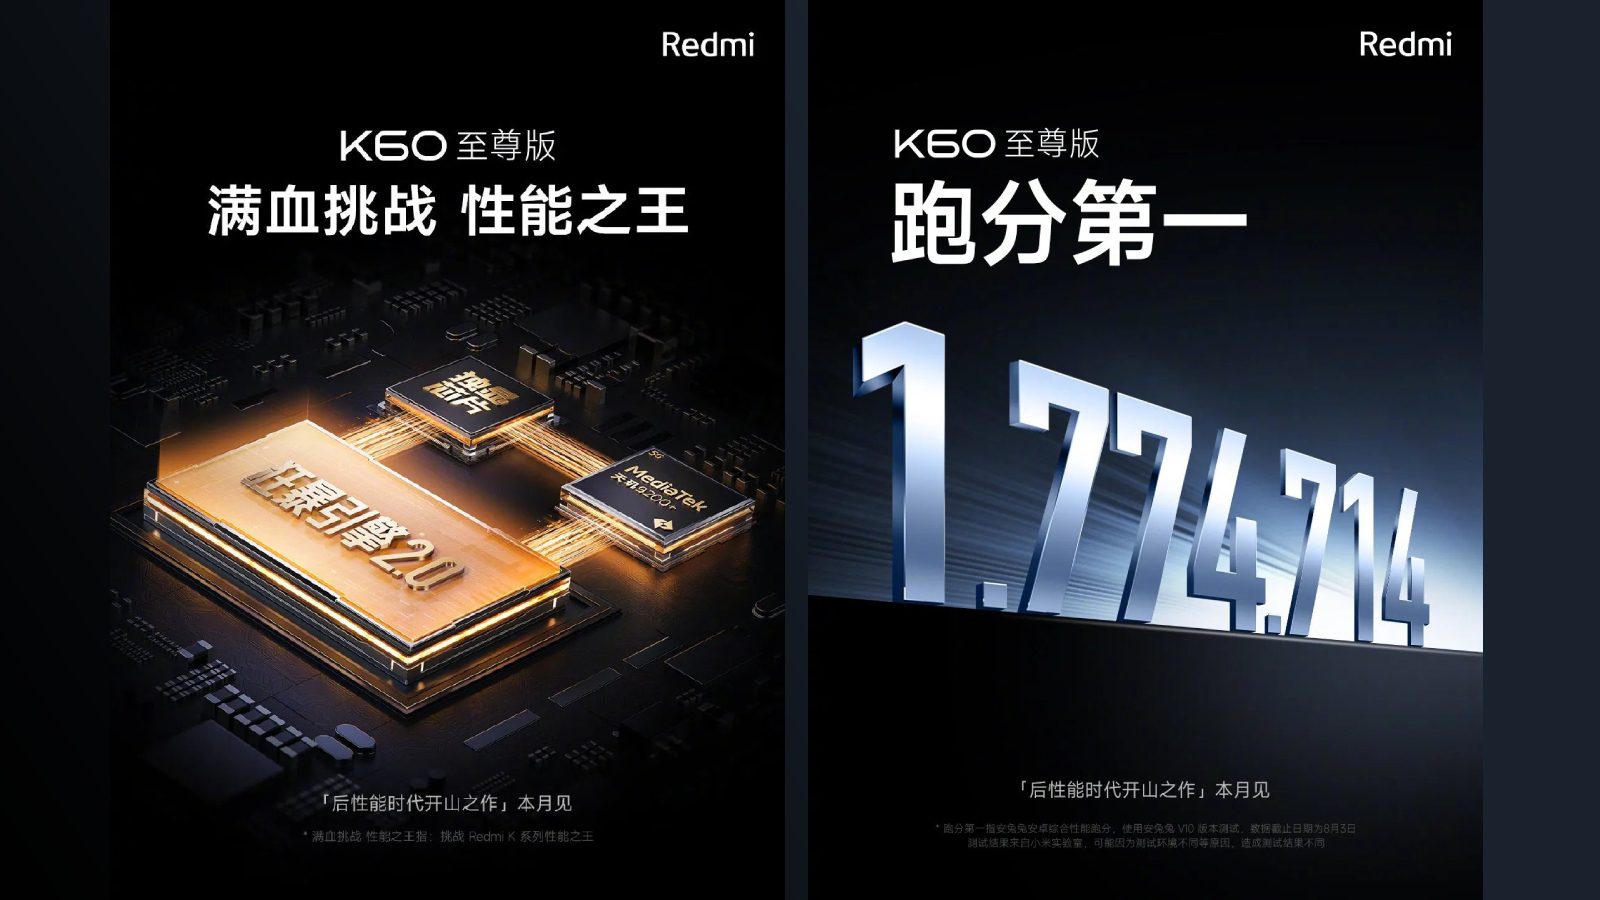 Обнародованы результаты AnTuTu Redmi K60 Ultra, который, скорее всего, выйдет в этом месяце